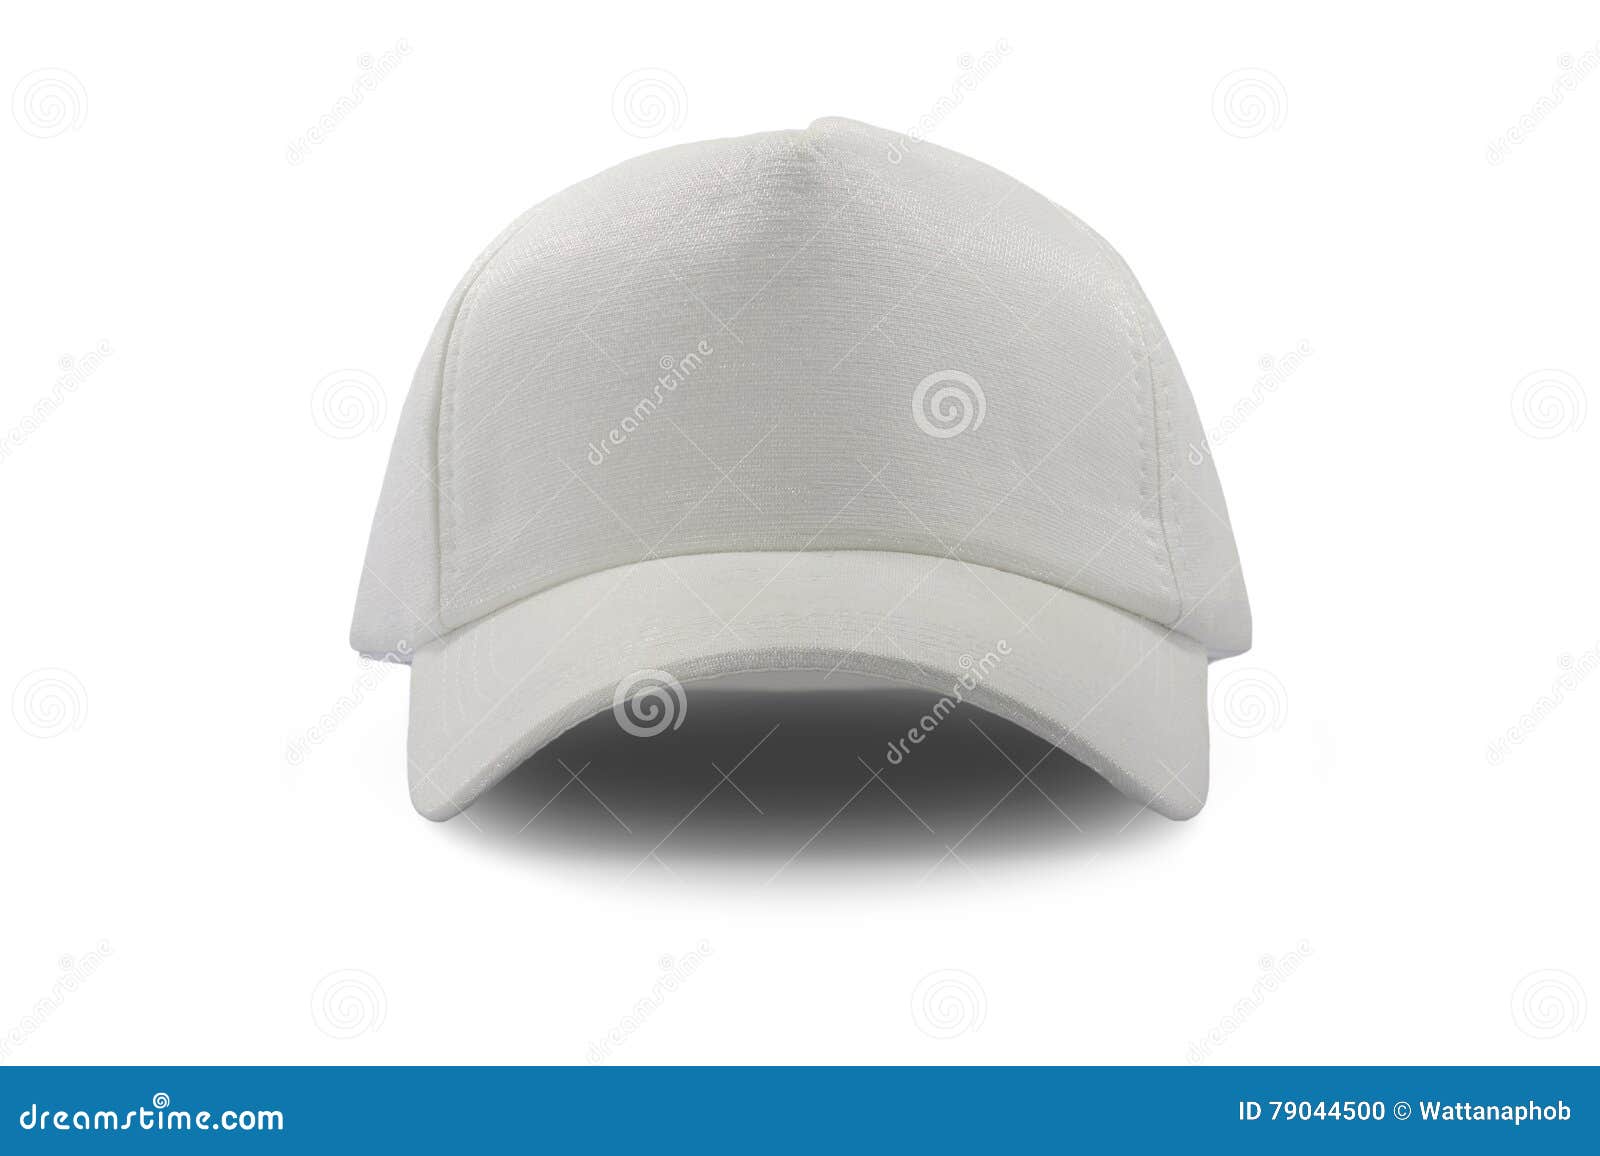 Fashion white cap isolated stock photo. Image of isolated - 79044500